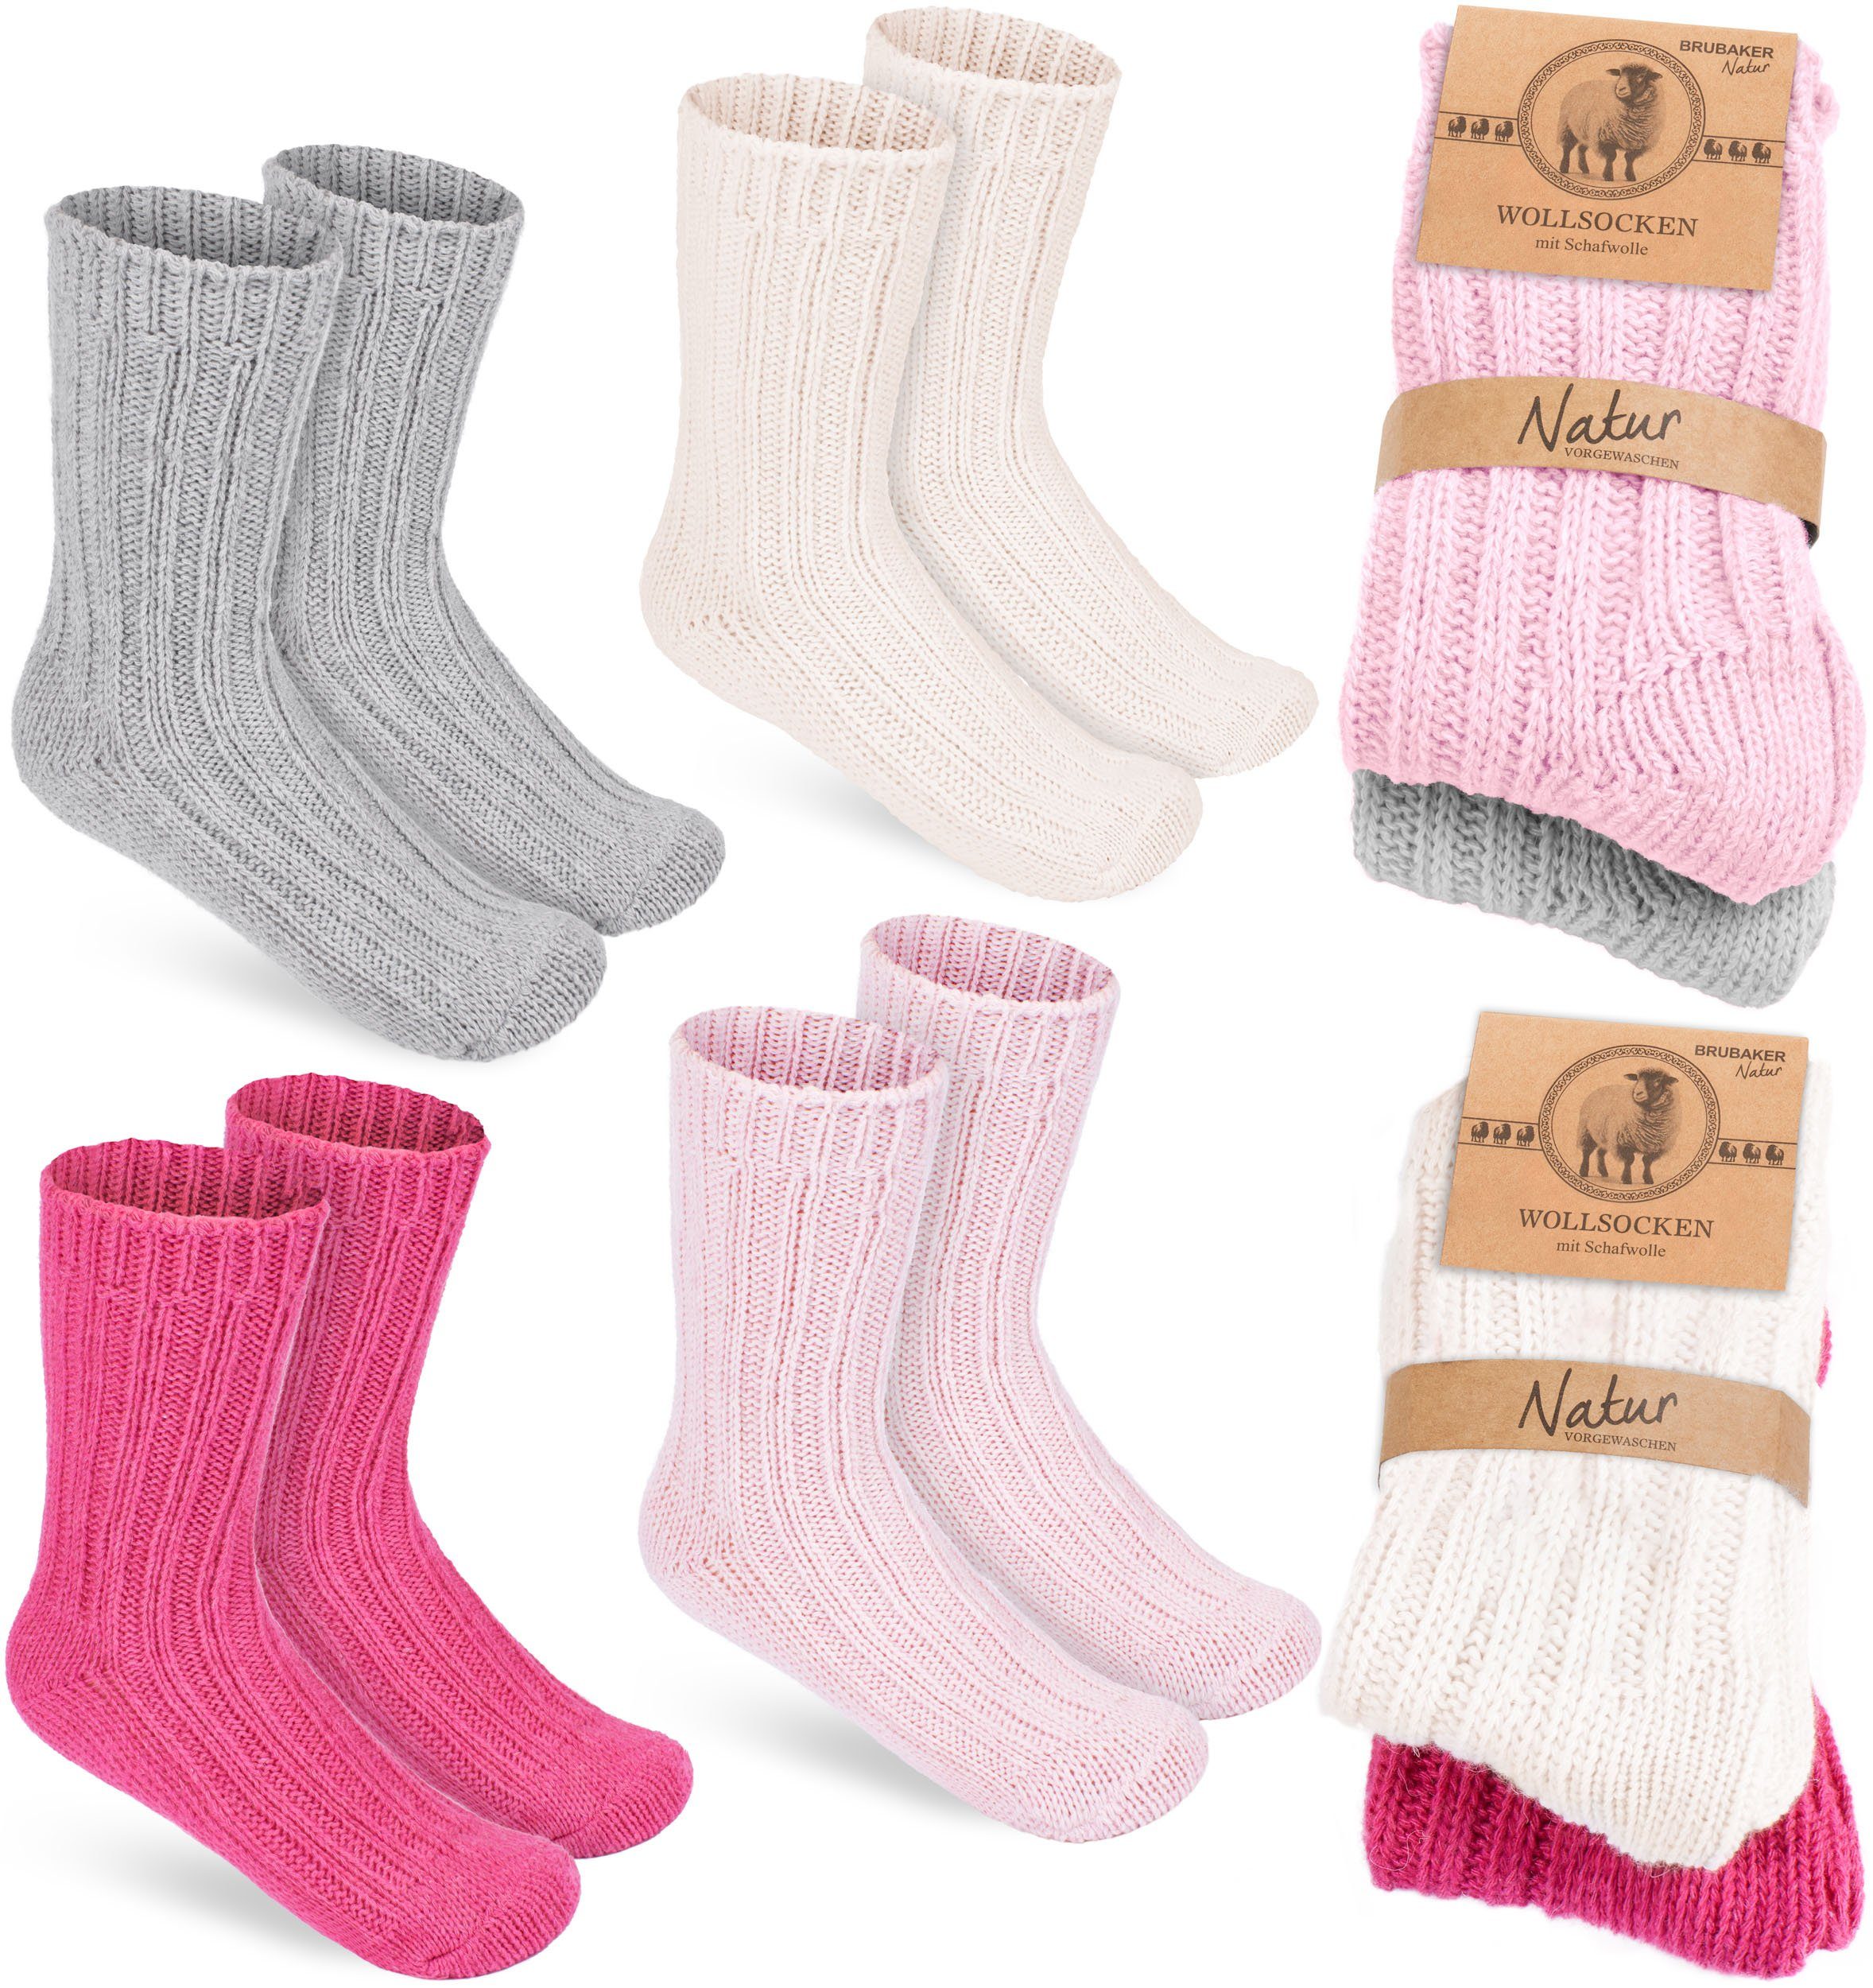 BRUBAKER Socken Kinder Wollsocken - Warme Wintersocken für Jungen und Mädchen (4-Paar, 4er-Pack) Flauschiges Socken Set mit Schafwolle - Winter Kindersocken